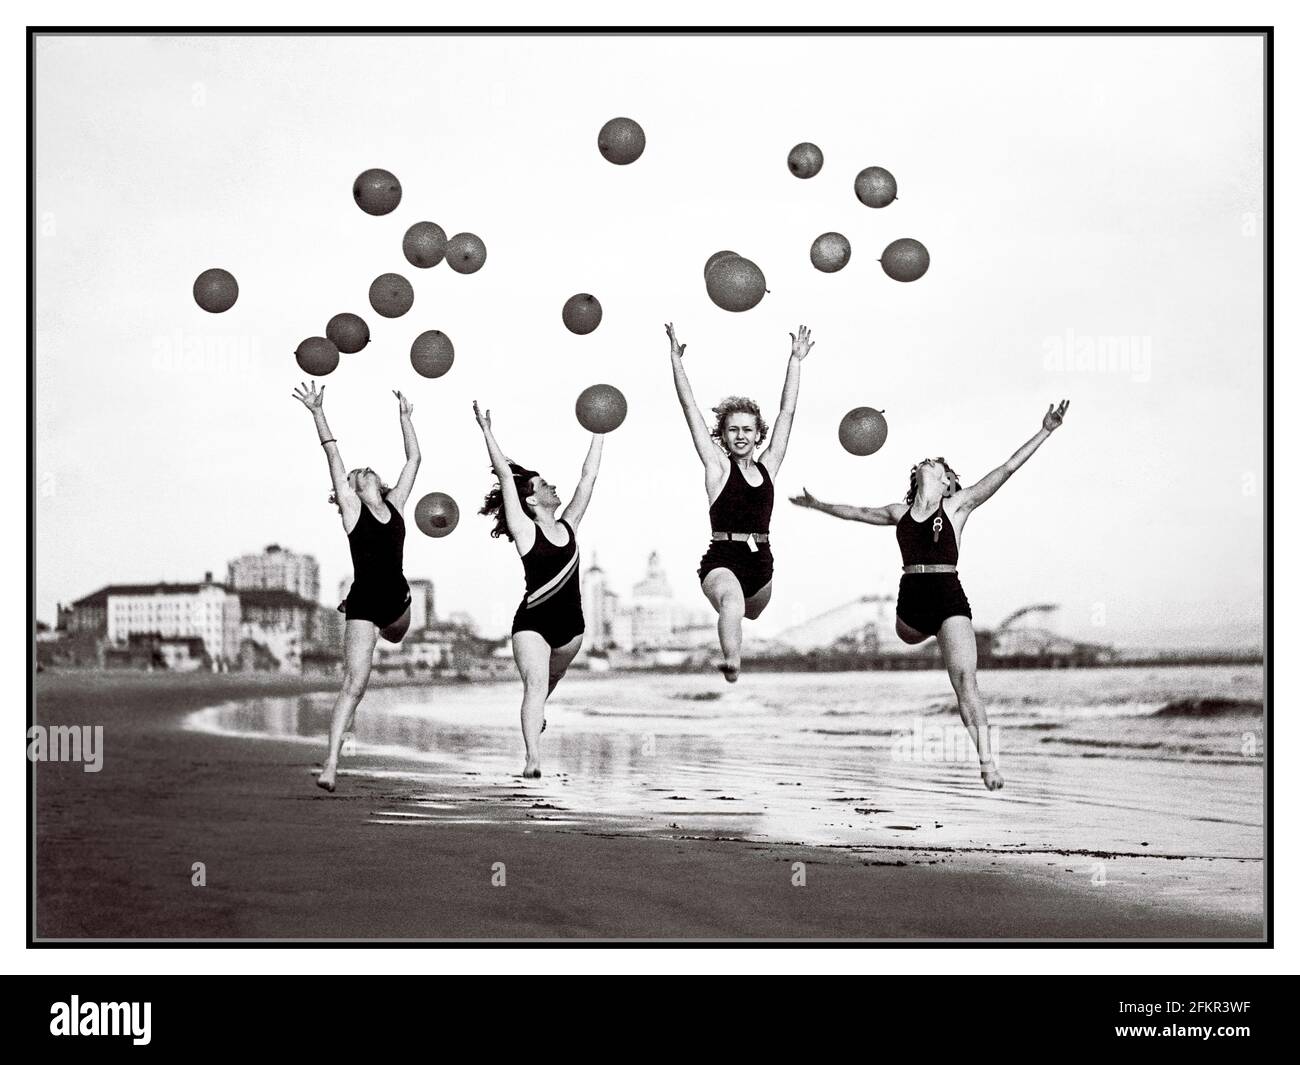 Vintage années 1930 Atlantic City USA Balloon Dance danseurs vitalité santé Retro Beach B&W Lifestyle photo Banque D'Images